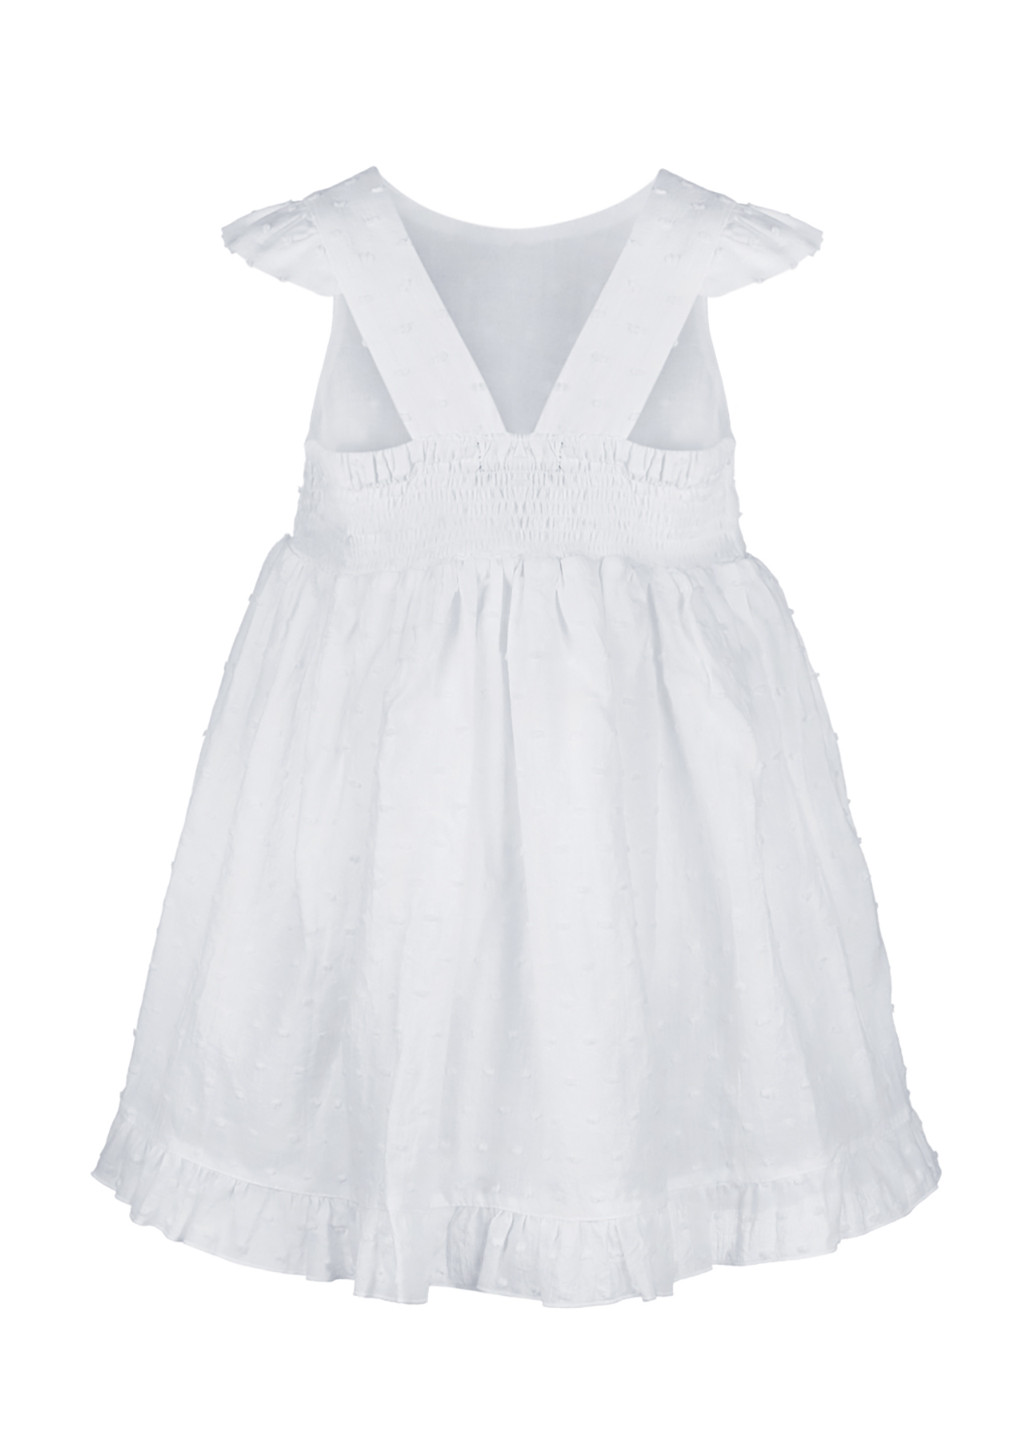 Білий святковий плаття, сукня Sasha однотонна